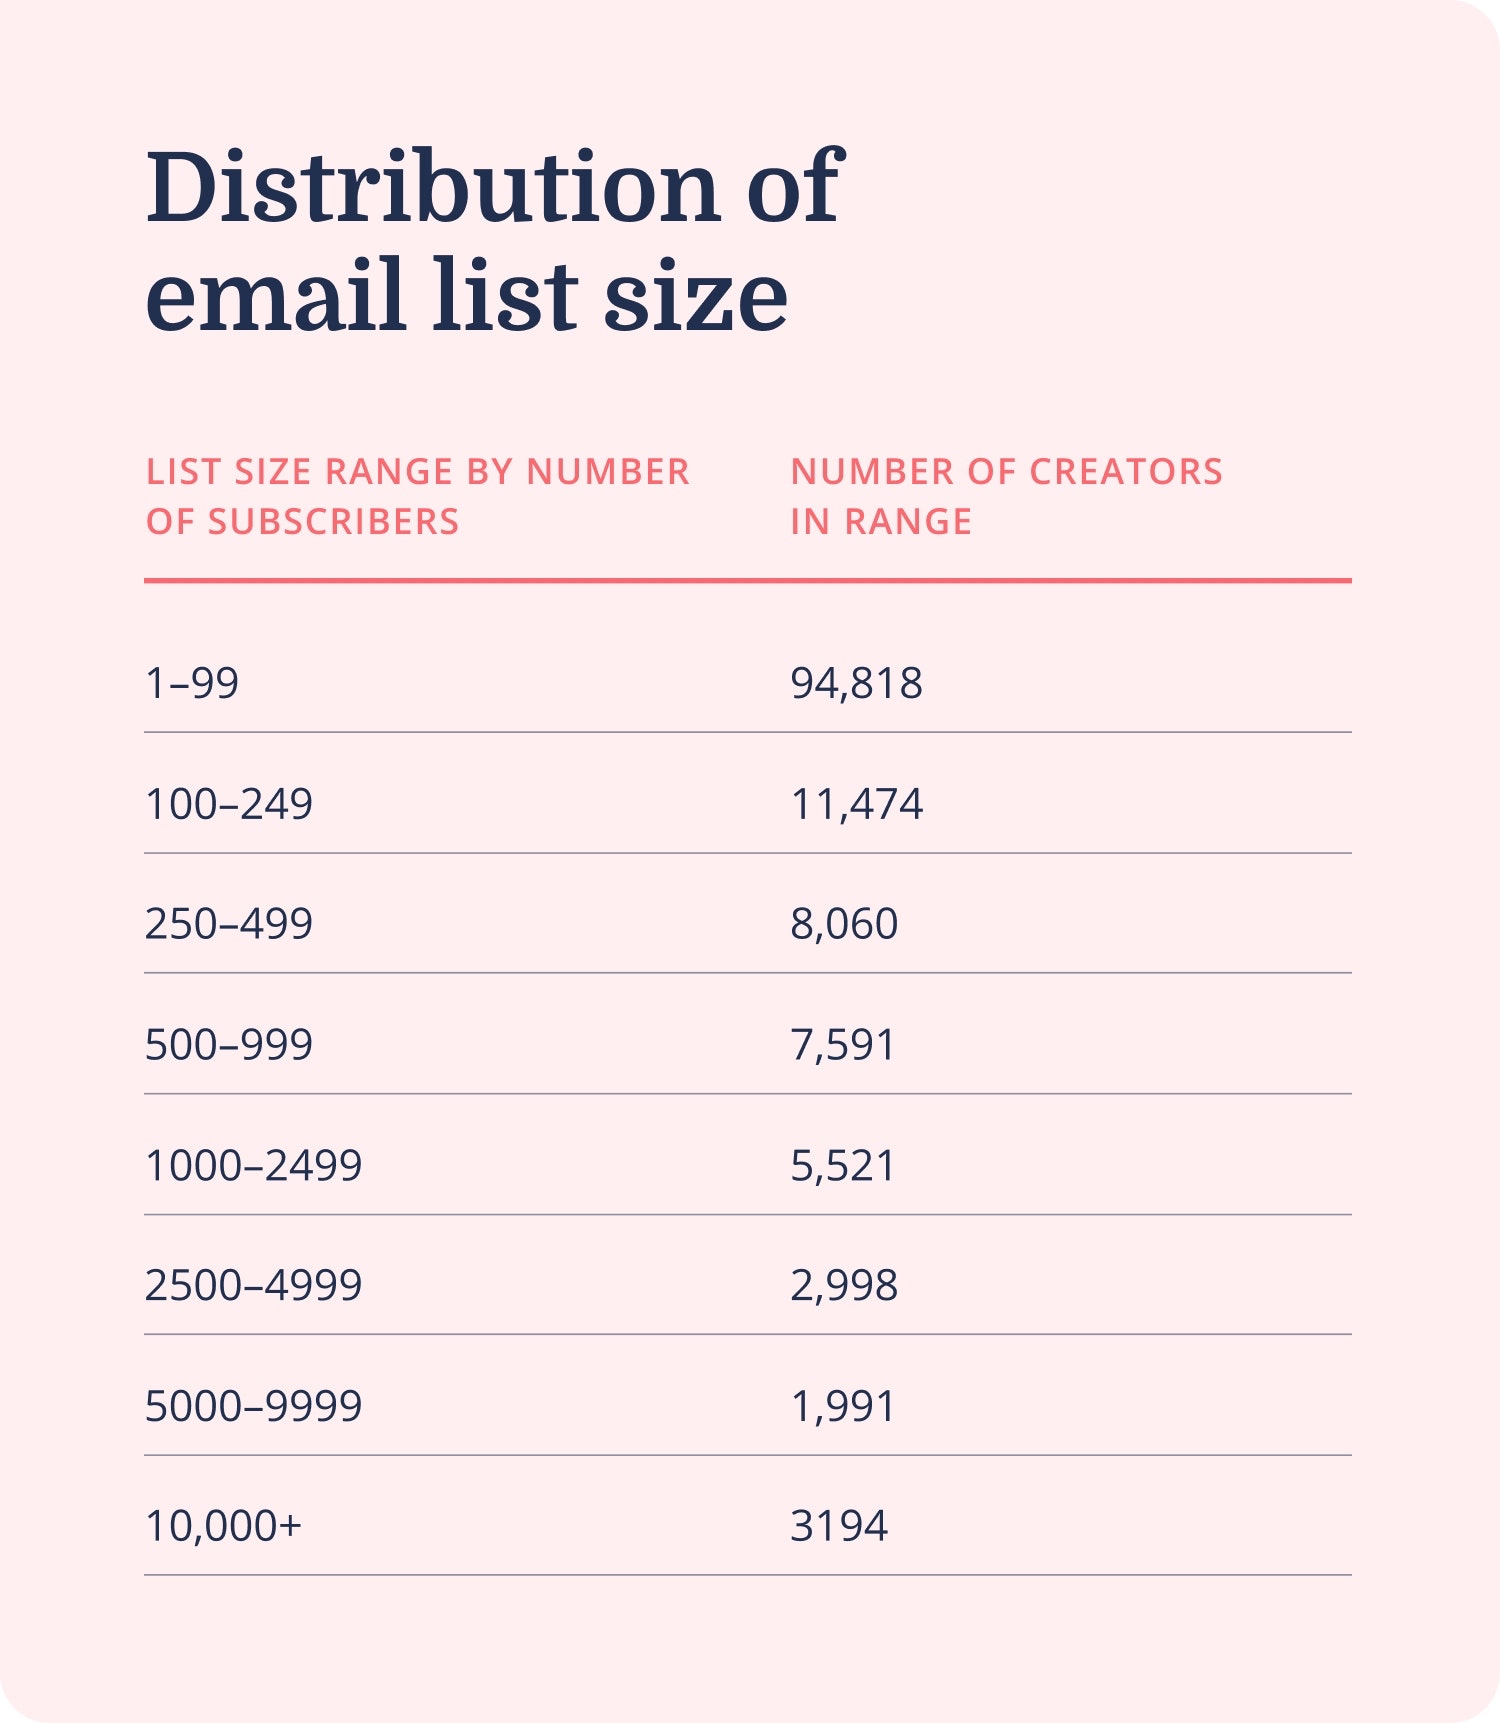 Estadísticas de marketing por correo electrónico